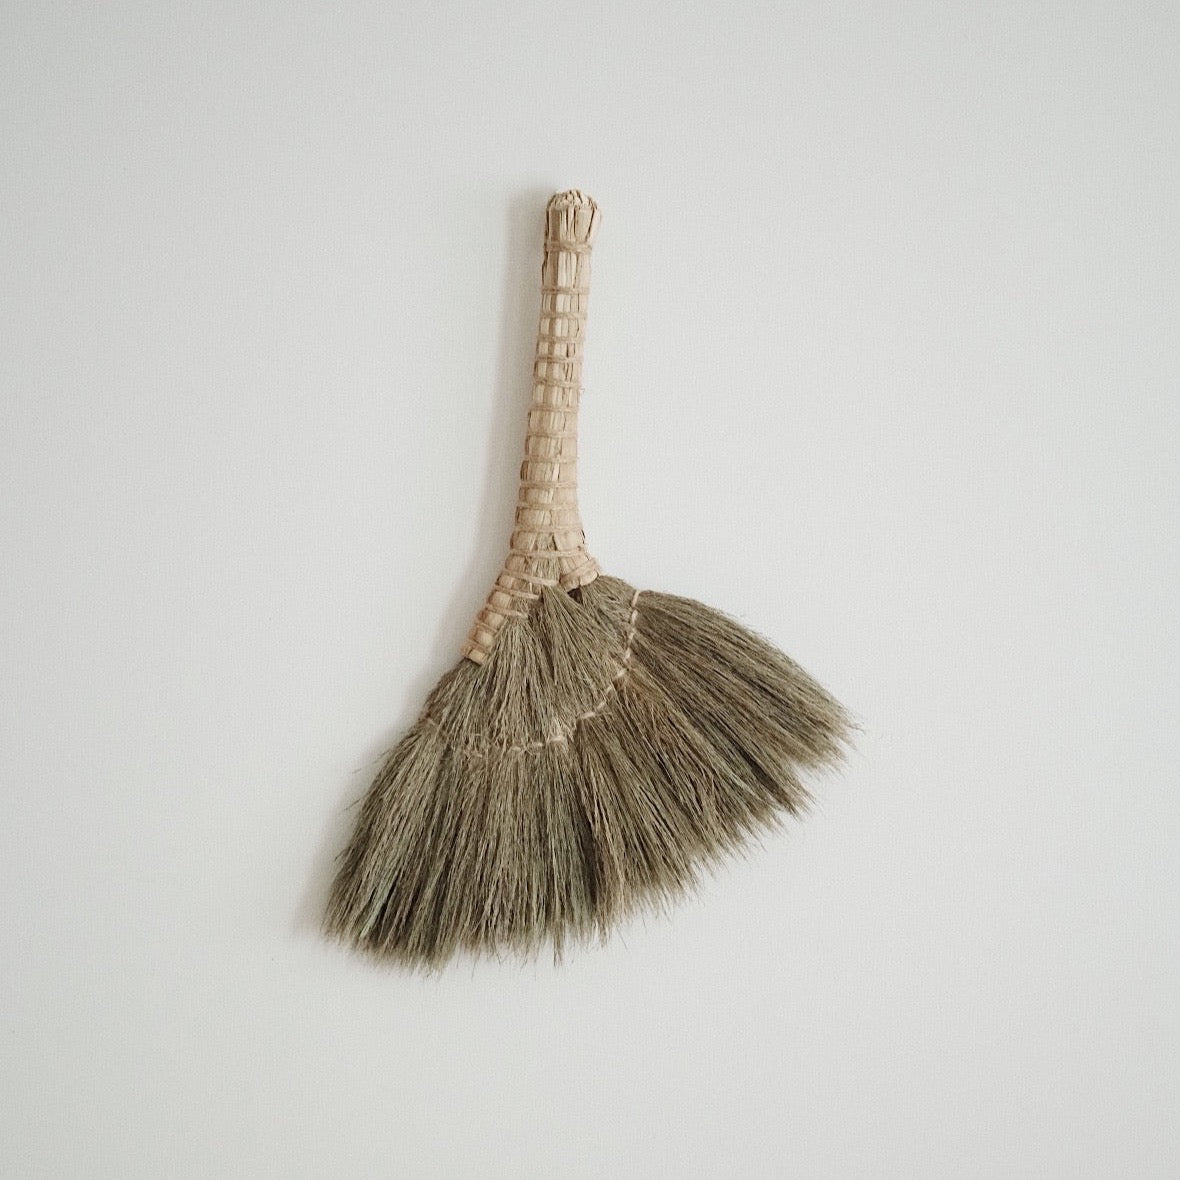 Small Broom Bitjaru(soft) - Natural